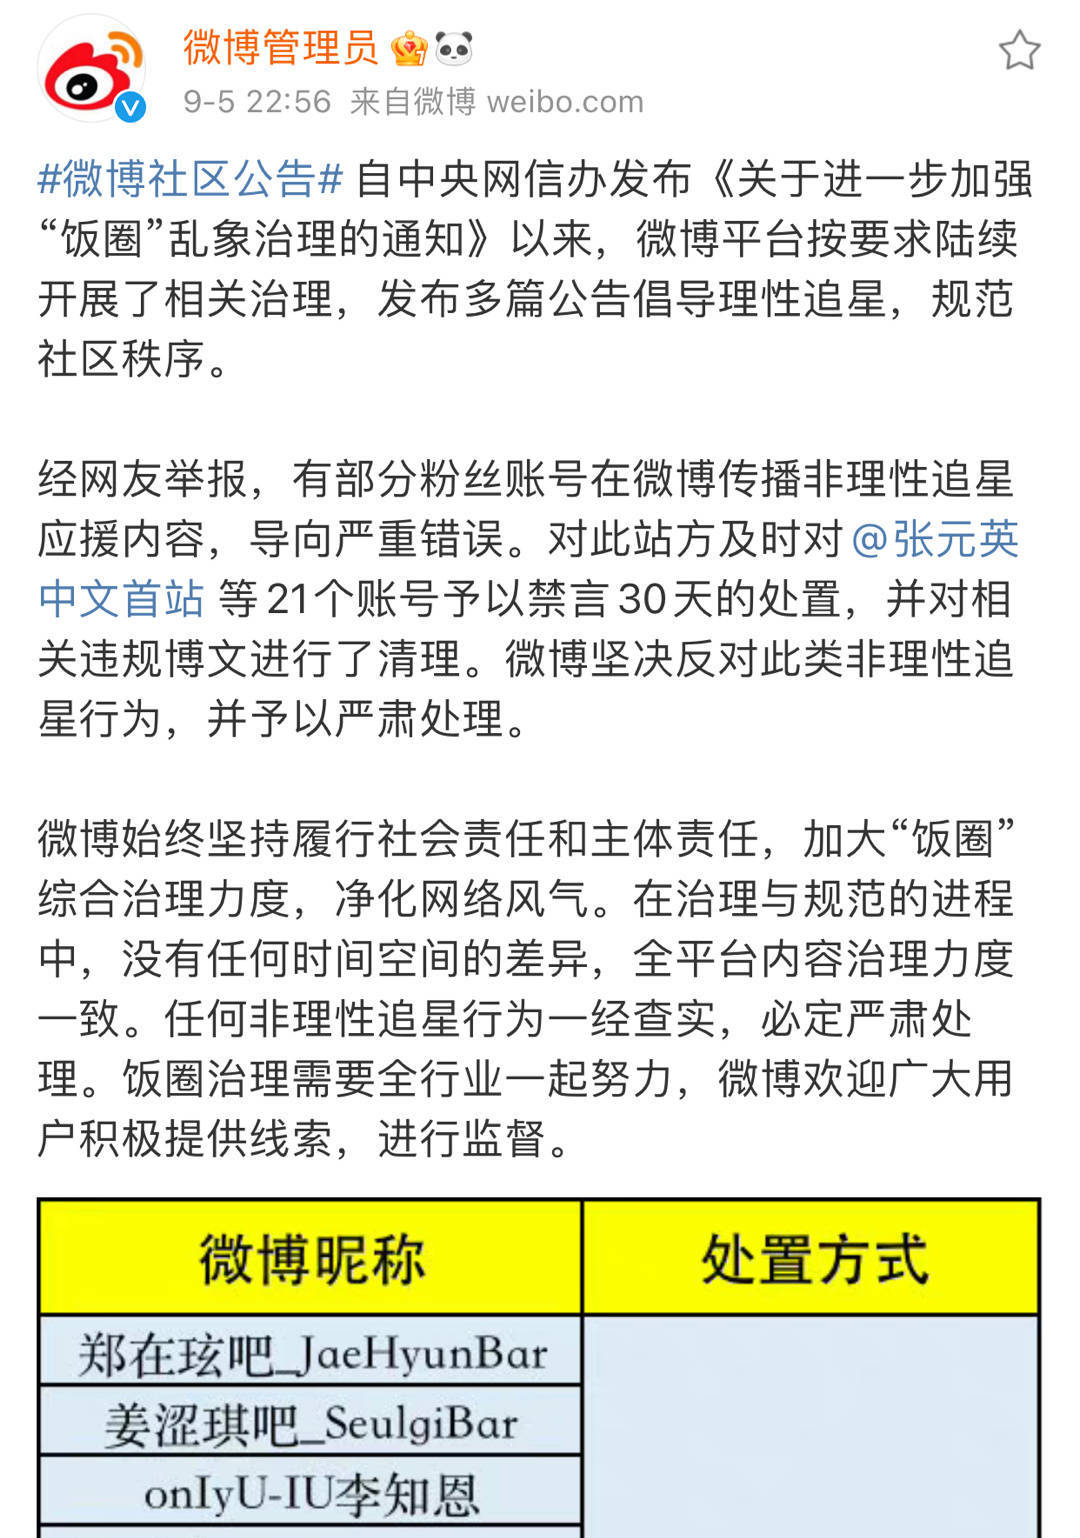 微博发布公告倡导理智追星 吴世勋等后援会微博被禁言